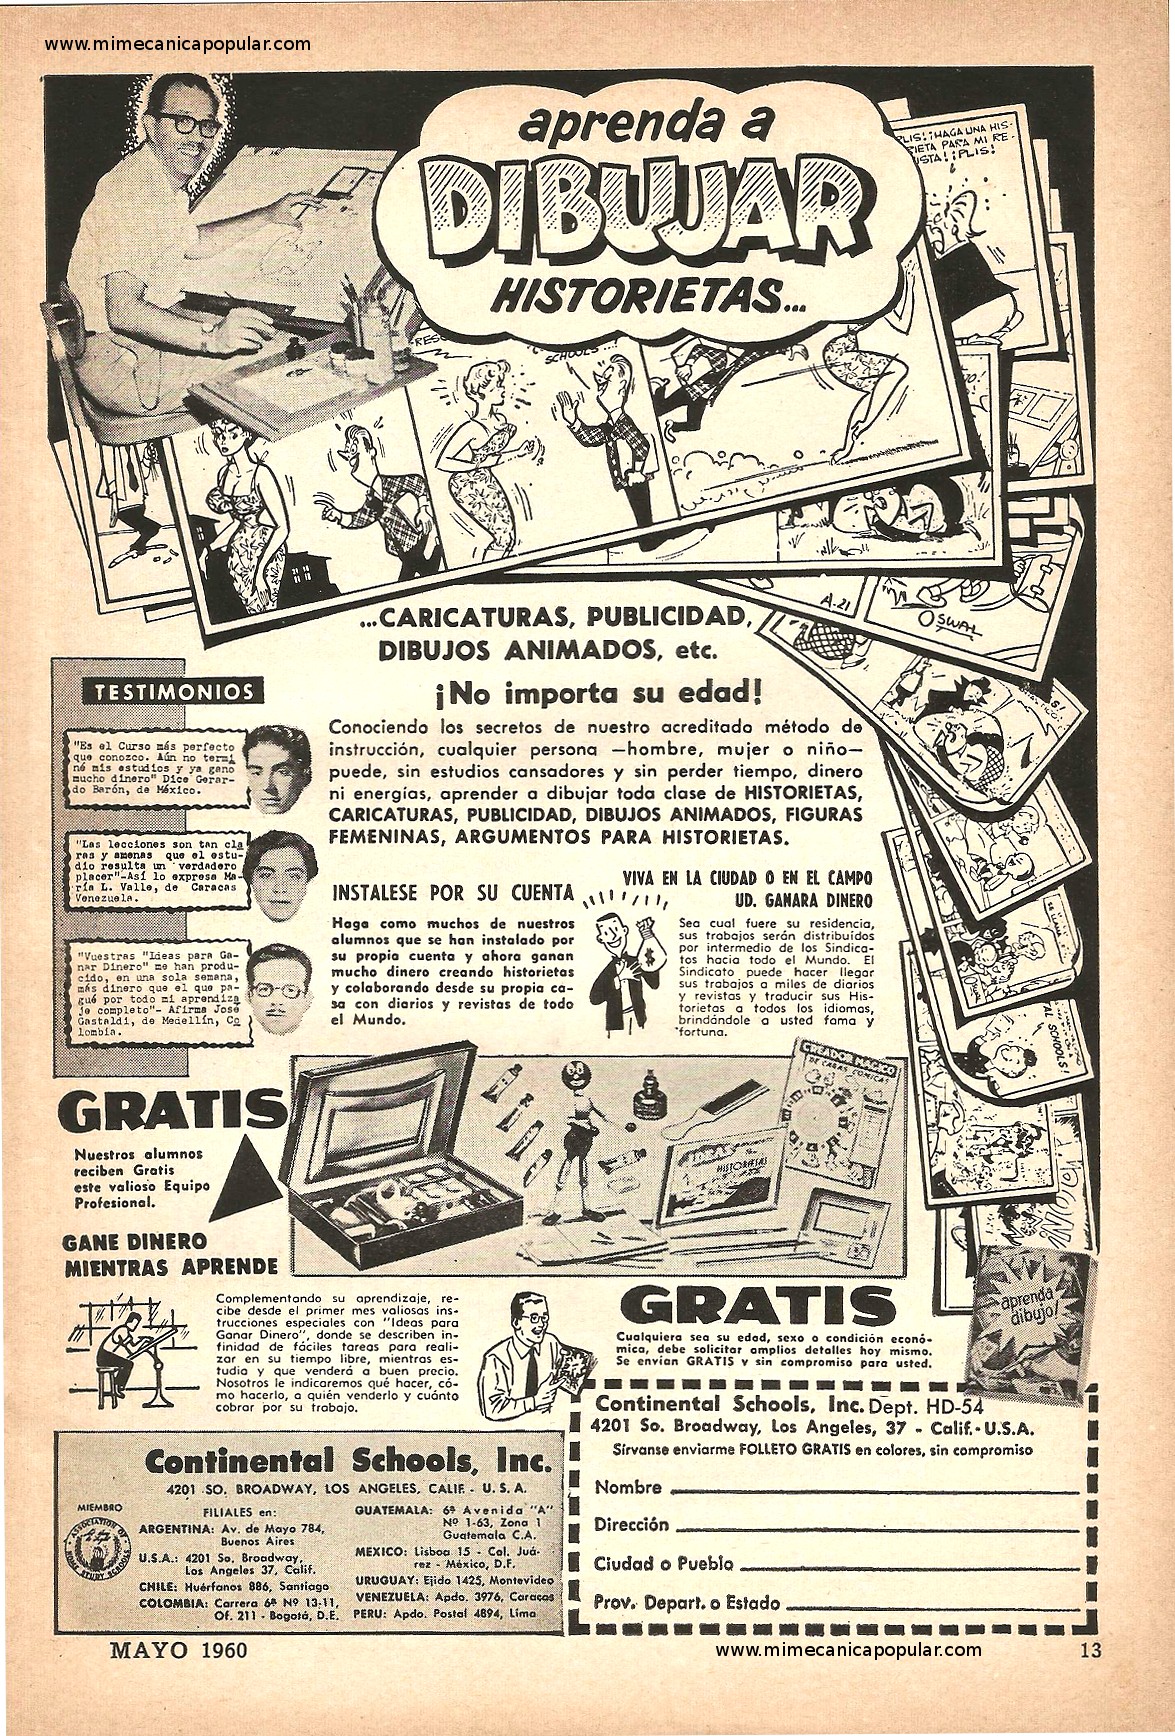 Publicidad - Continental Schools - Mayo 1960